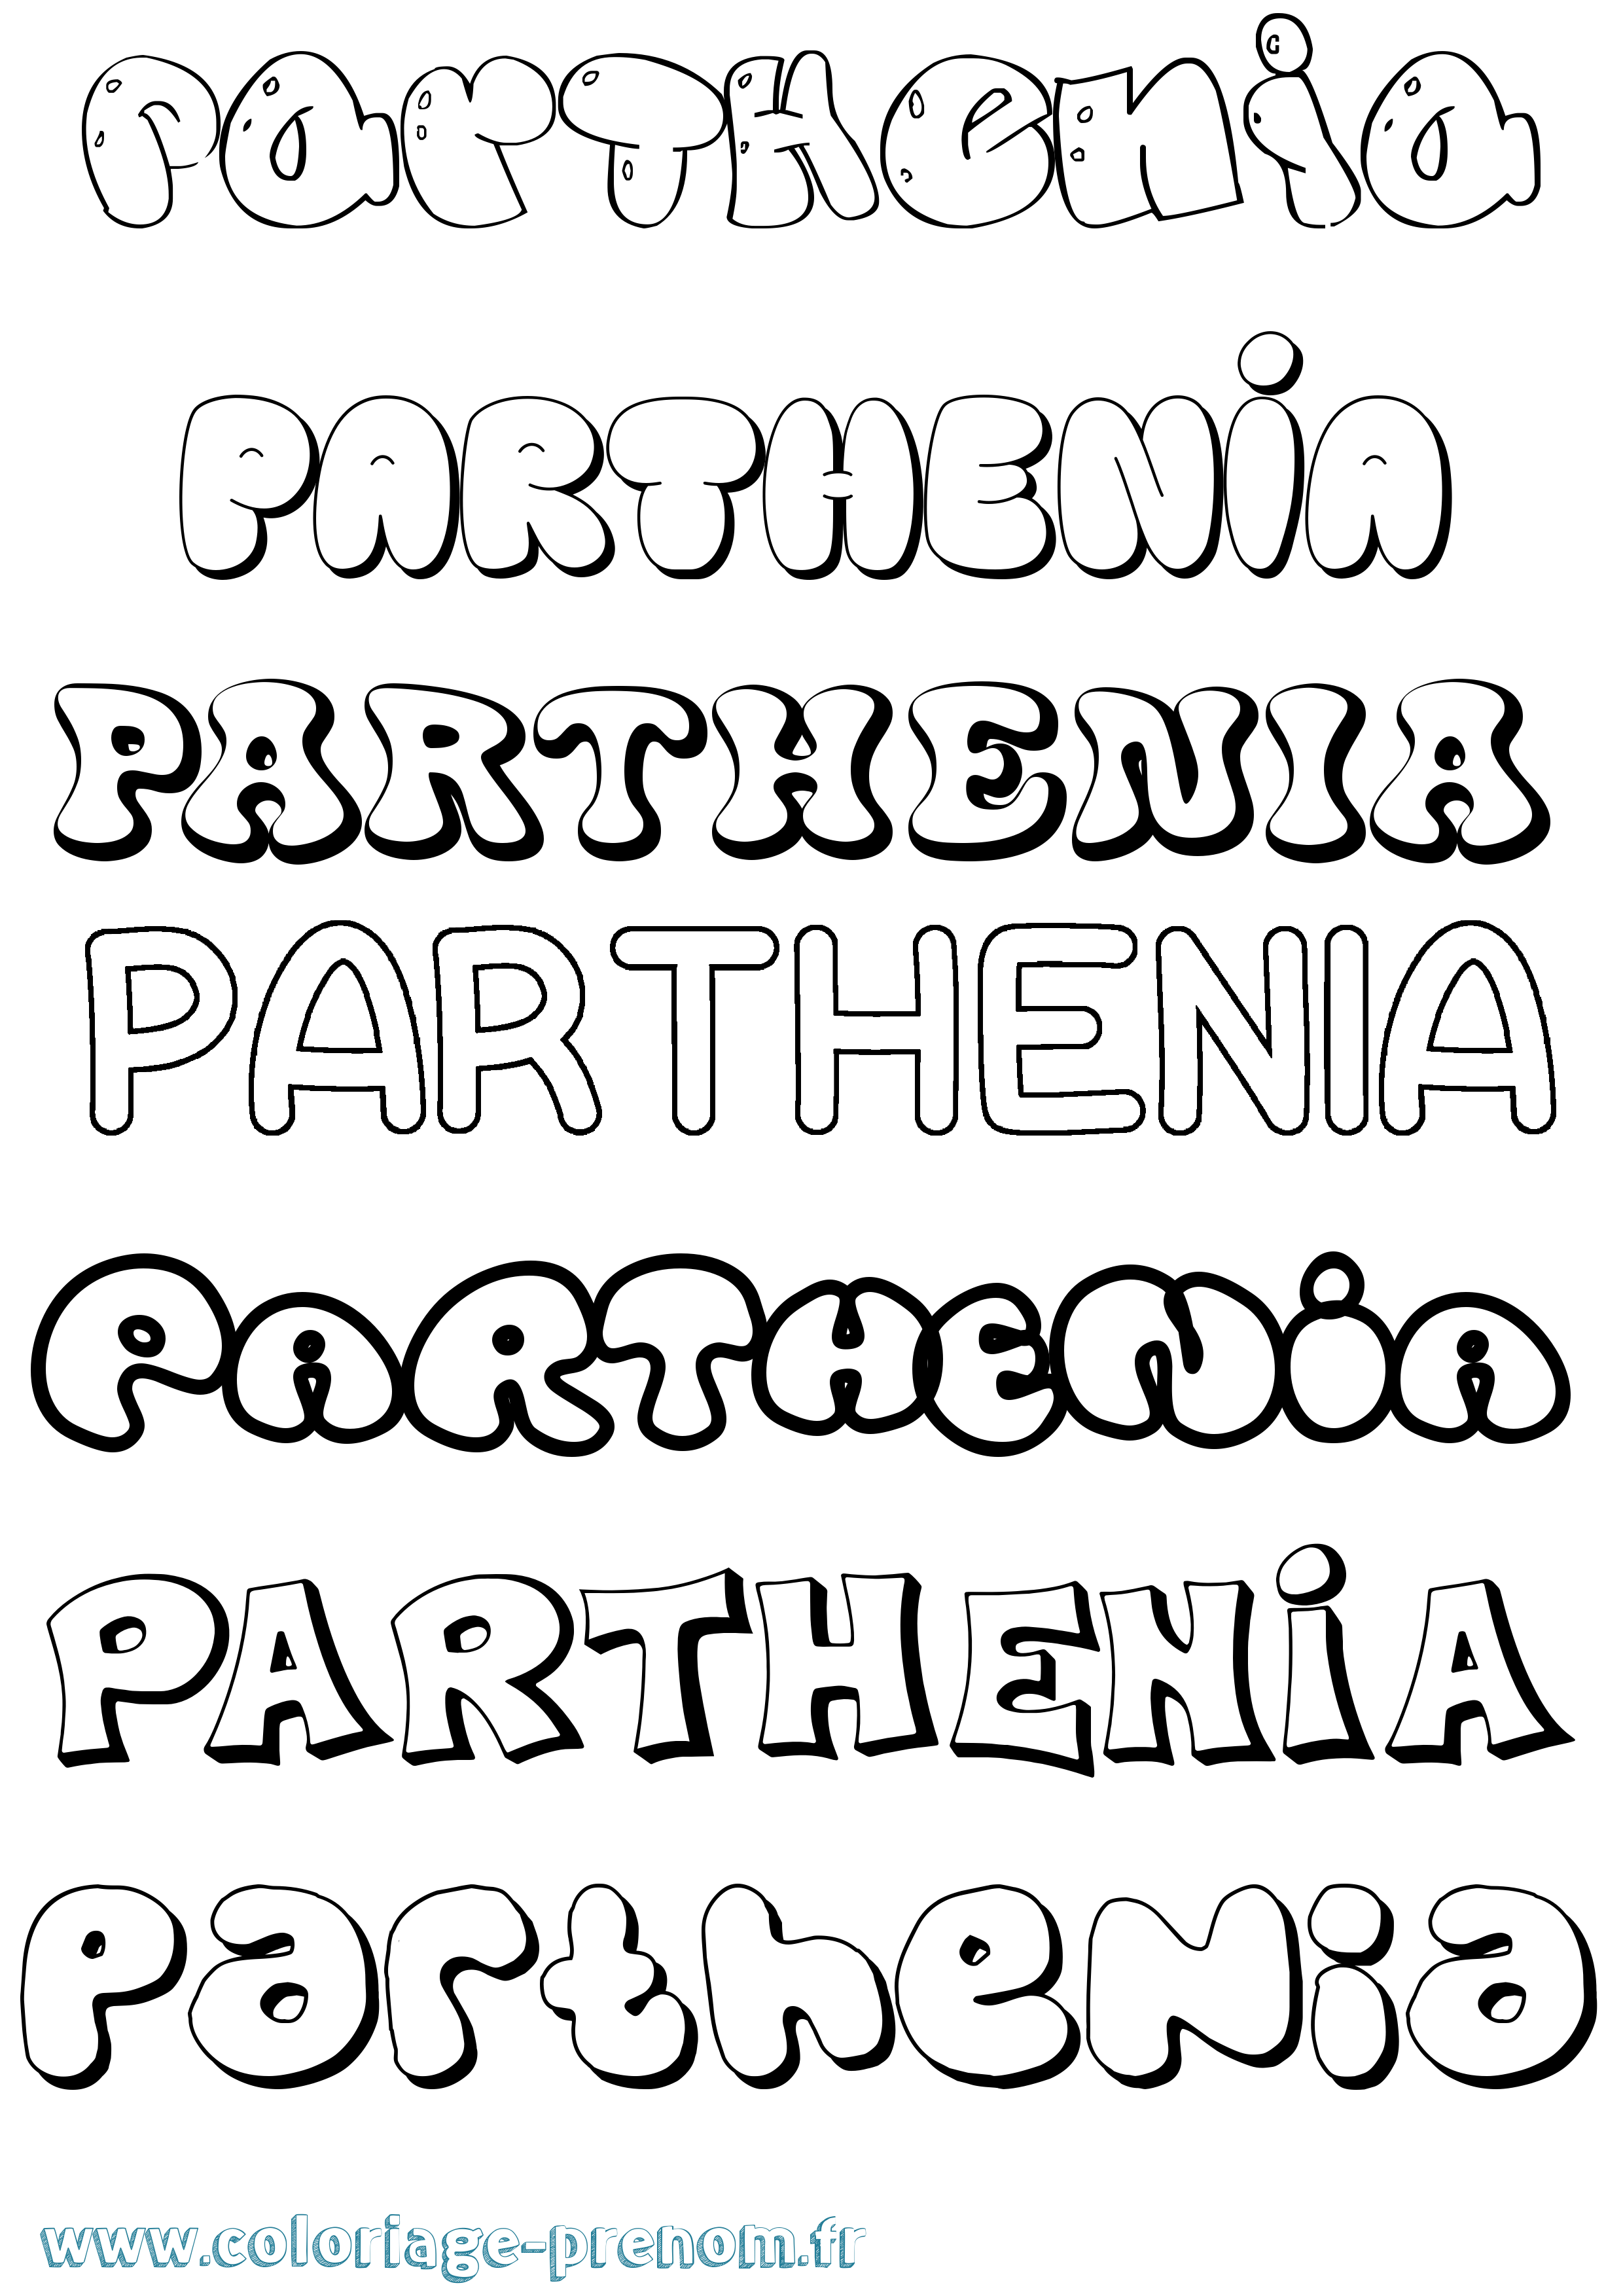 Coloriage prénom Parthenia Bubble